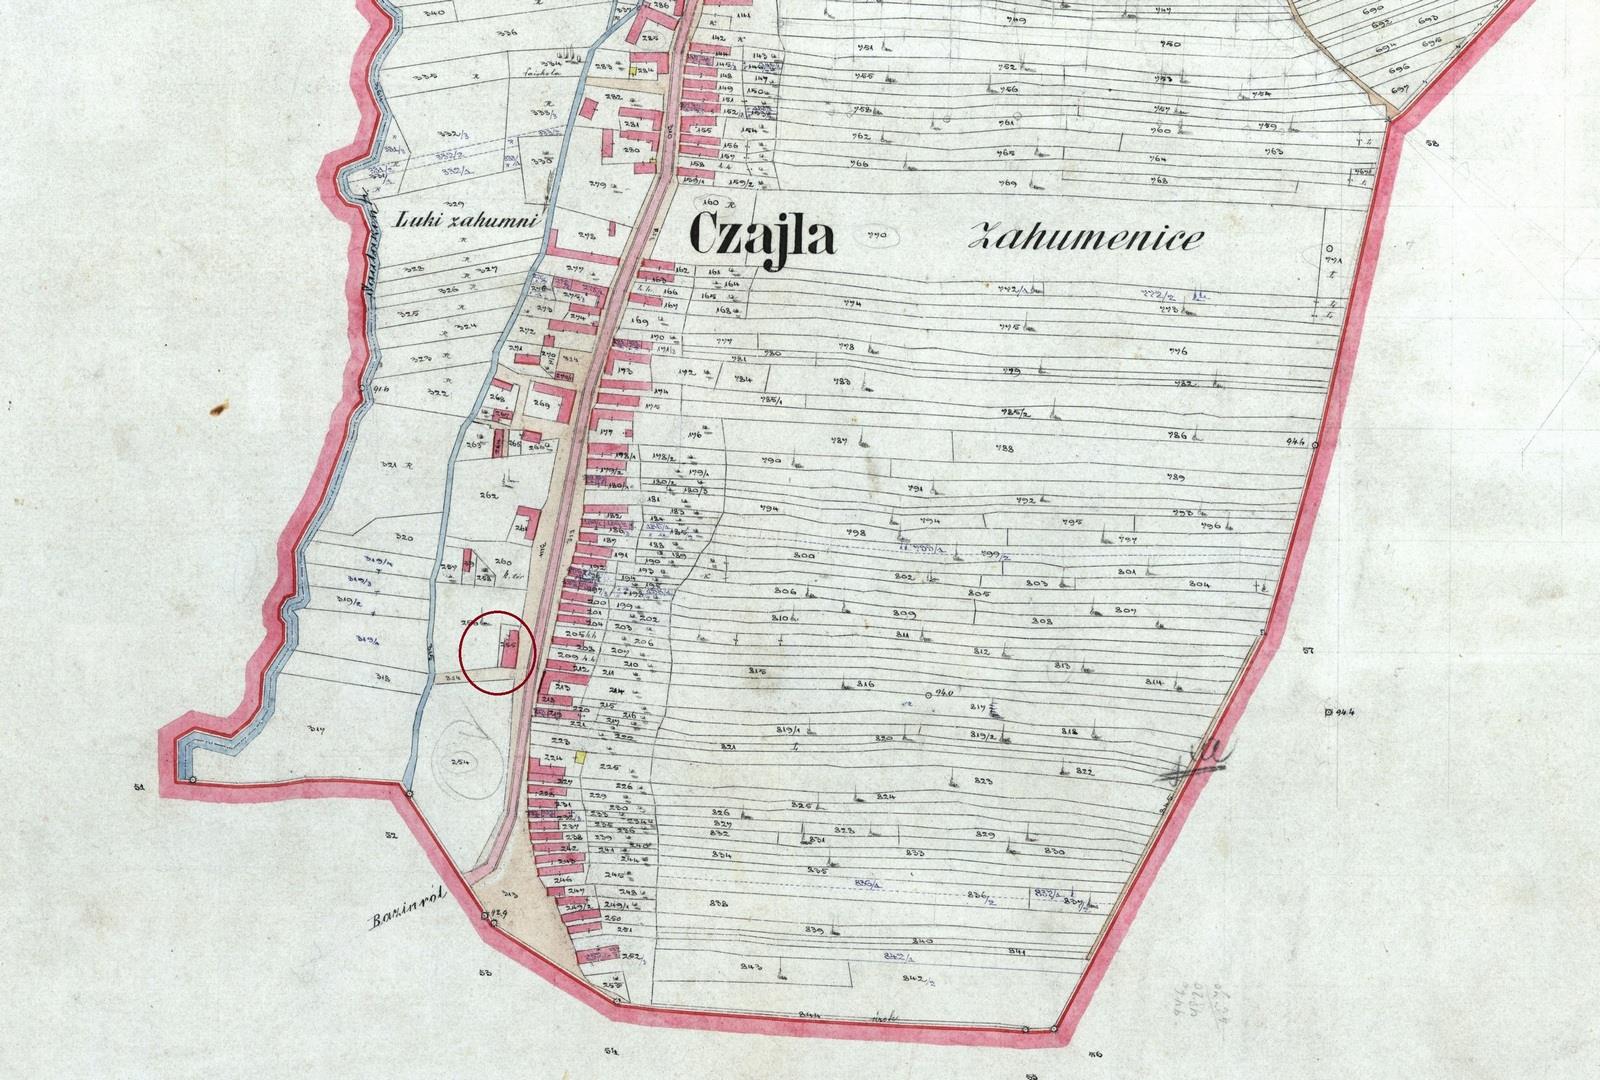 Rákociovská (Rakovských) kúria na výreze katastrálnej mapy z konca 19. storočia (Ústav geodézie a kartografie)